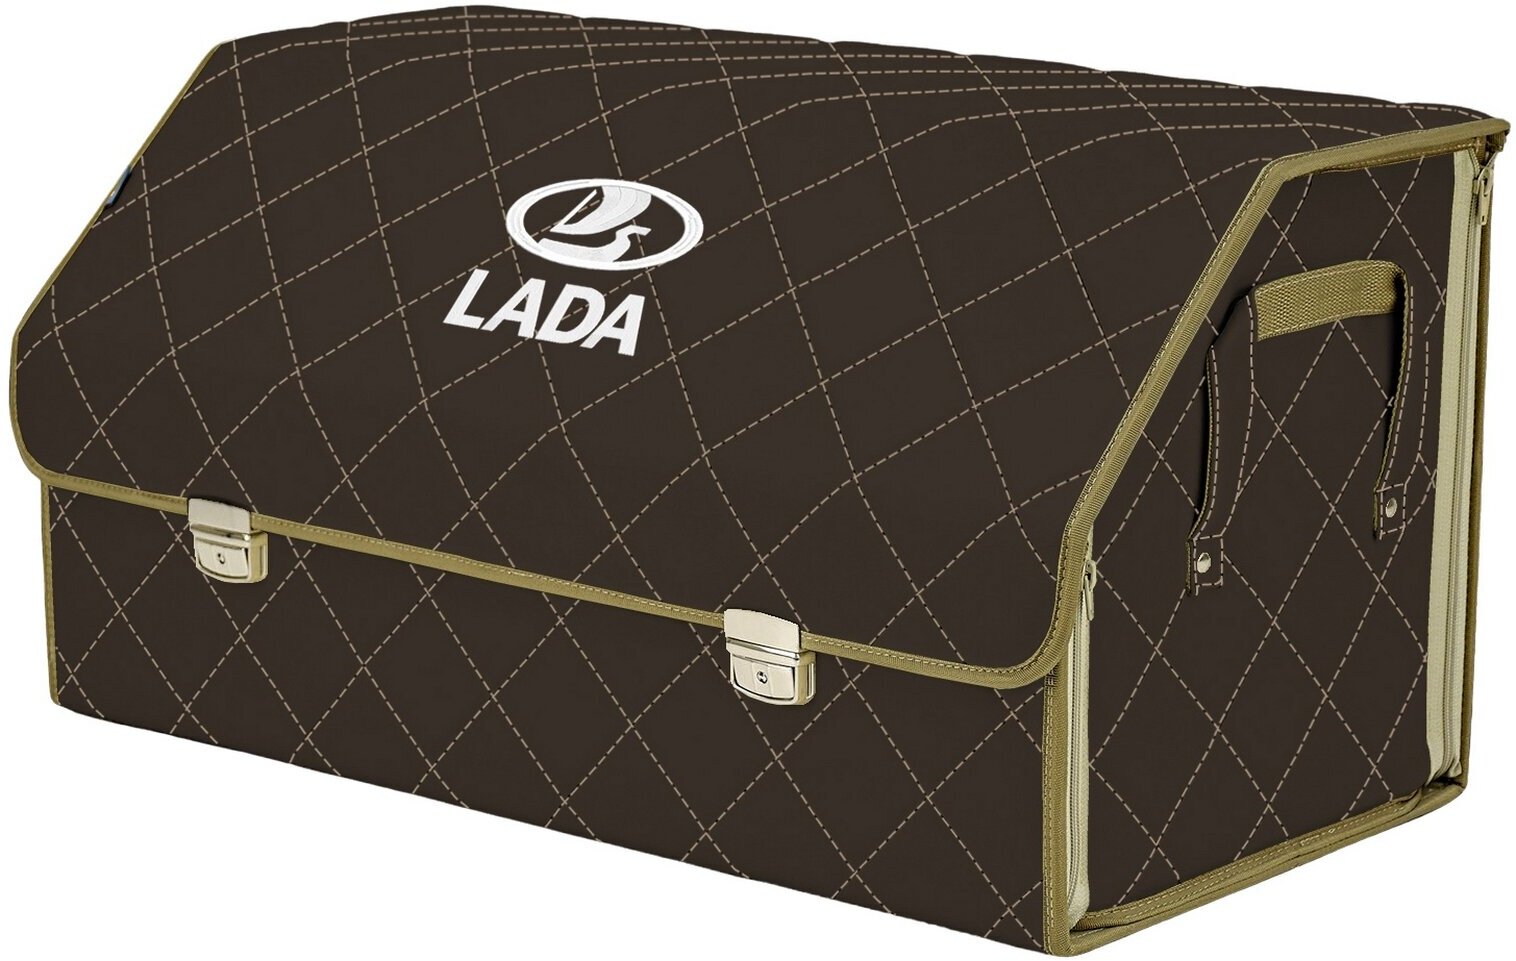 Органайзер-саквояж в багажник "Союз Премиум" (размер XL Plus). Цвет: коричневый с бежевой прострочкой Ромб и вышивкой LADA (лада).